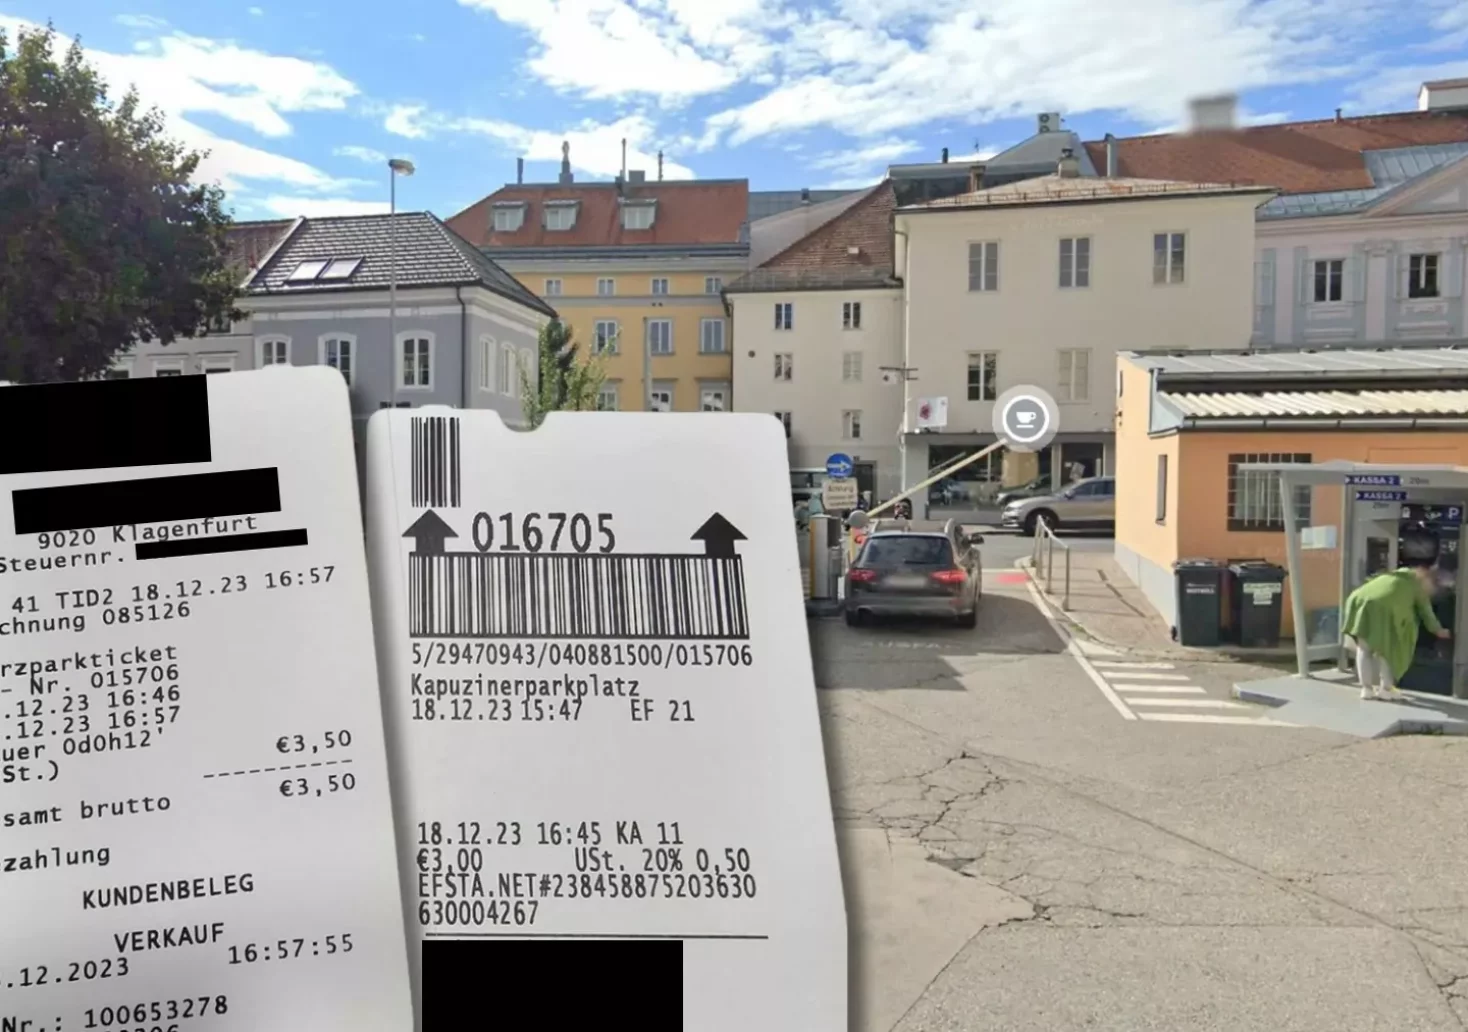 Eine Bildmontage auf 5min.at zeigt den Kapuziner Parkplatz und die beiden Belege für die doppelt bezahlte Parktgebühr.